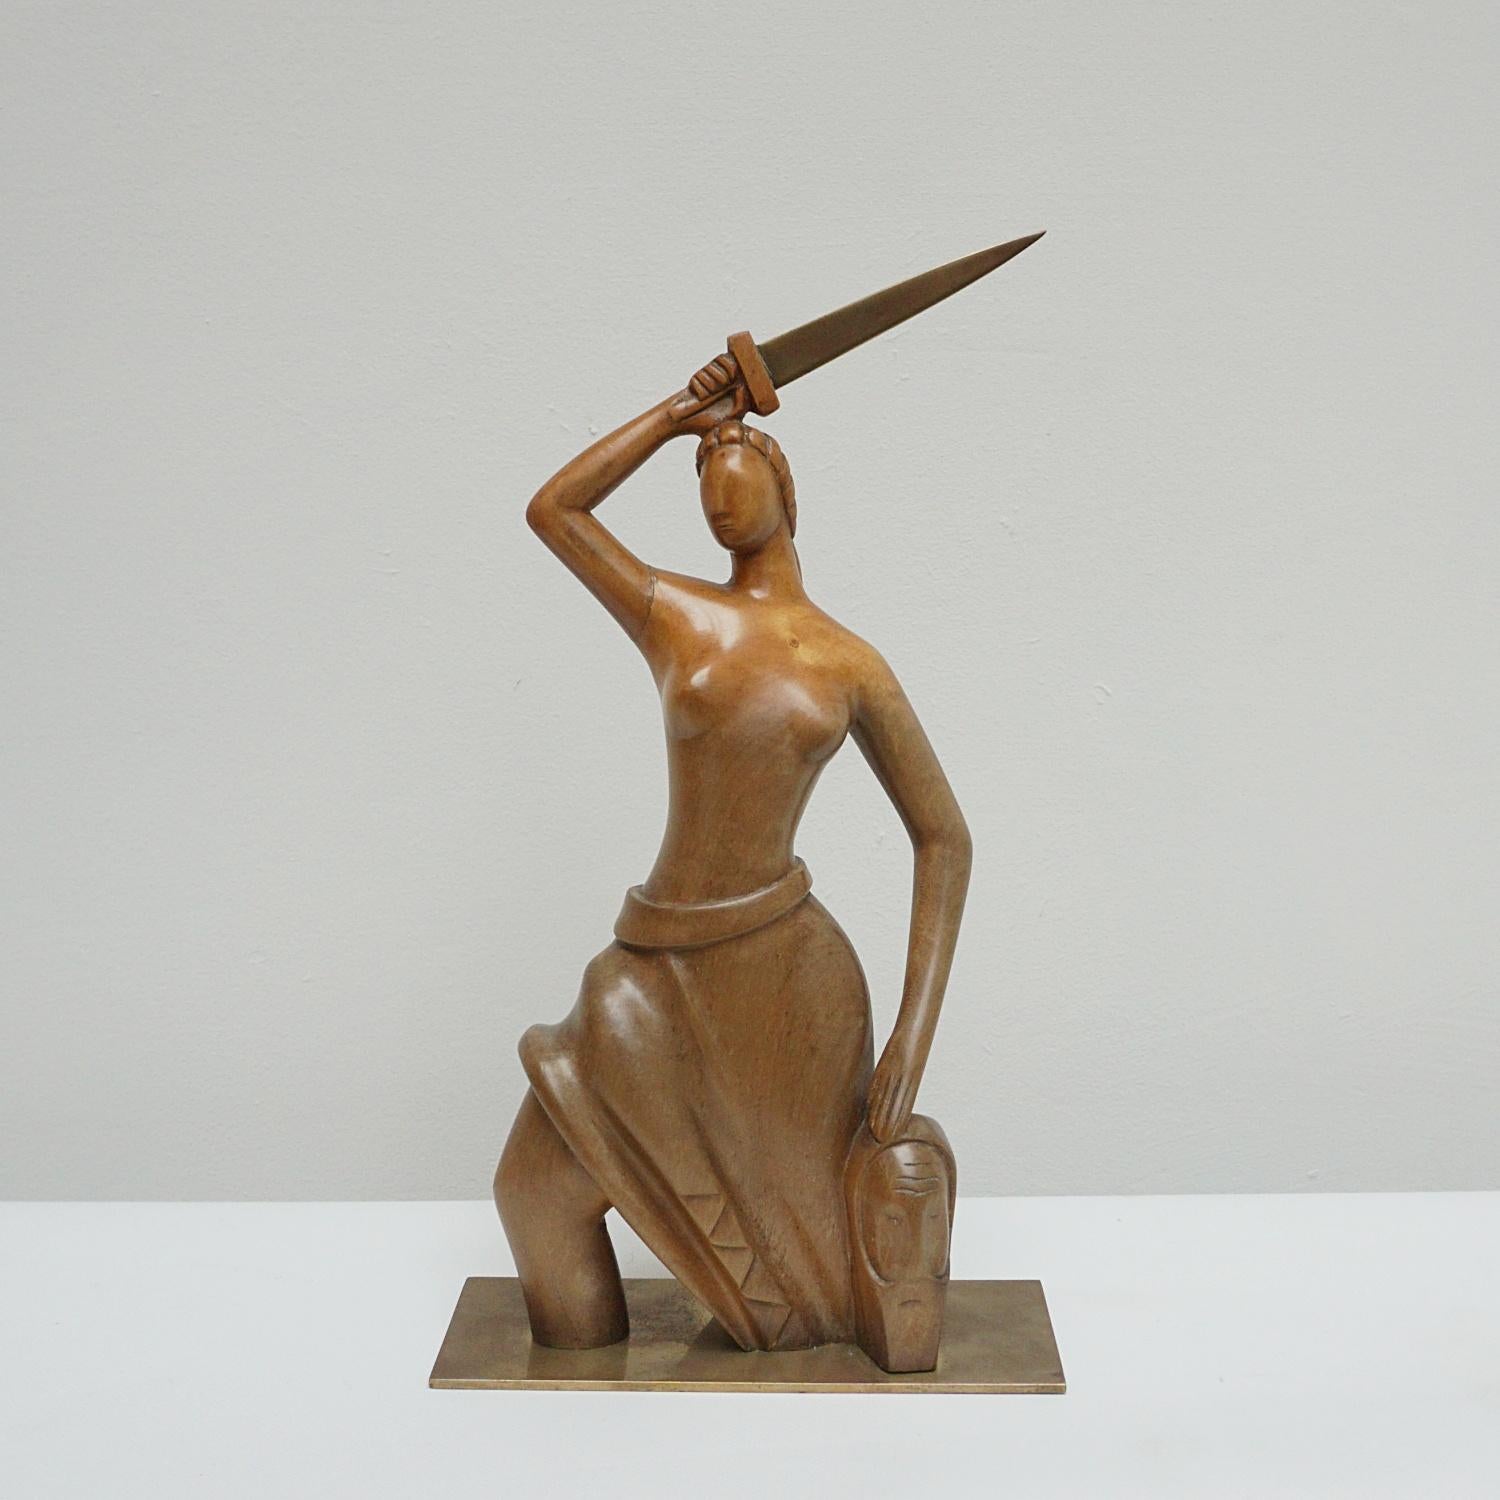 Eine Art-Déco-Skulptur des ungarischen Designers Laszlo Hoenig (1905-1971). Eine geschnitzte Holzstudie einer stilisierten halbnackten Figur, die ein Bronzeschwert und eine Stammesmaske hält. Hochglanzpolierter Nussbaum auf einem Bronzesockel. Auf